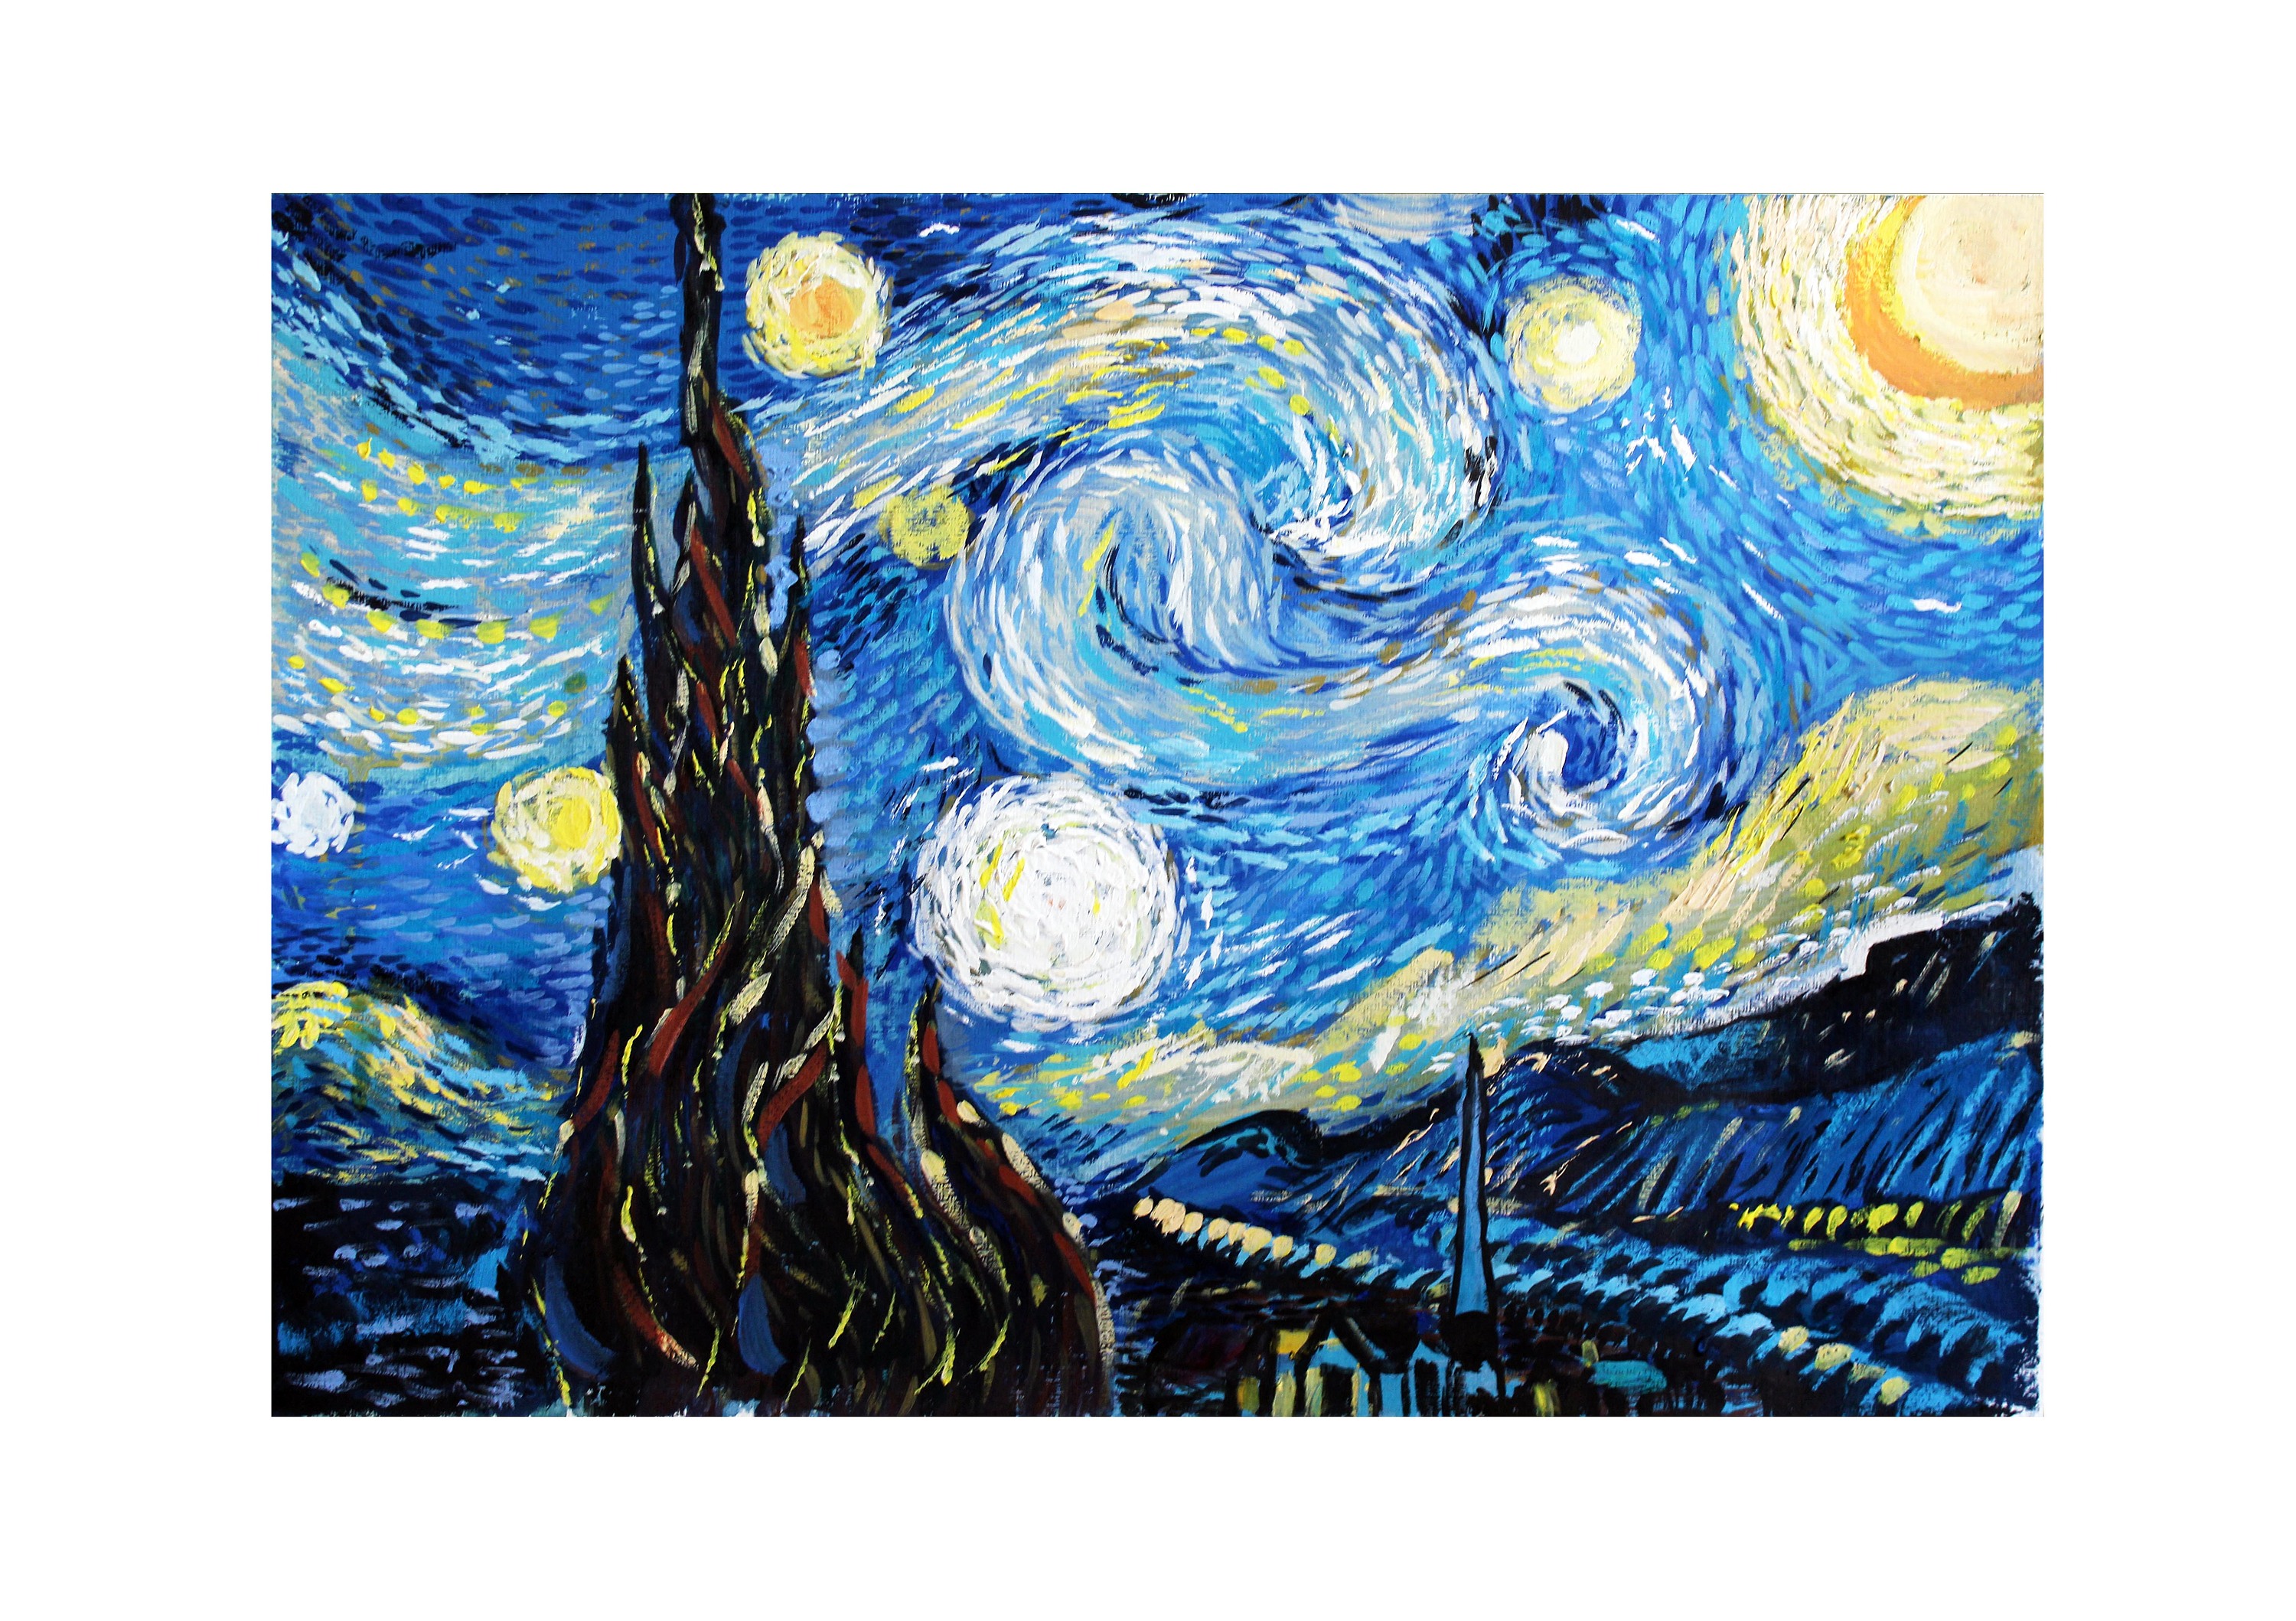 梵高星月夜手机壁纸图片